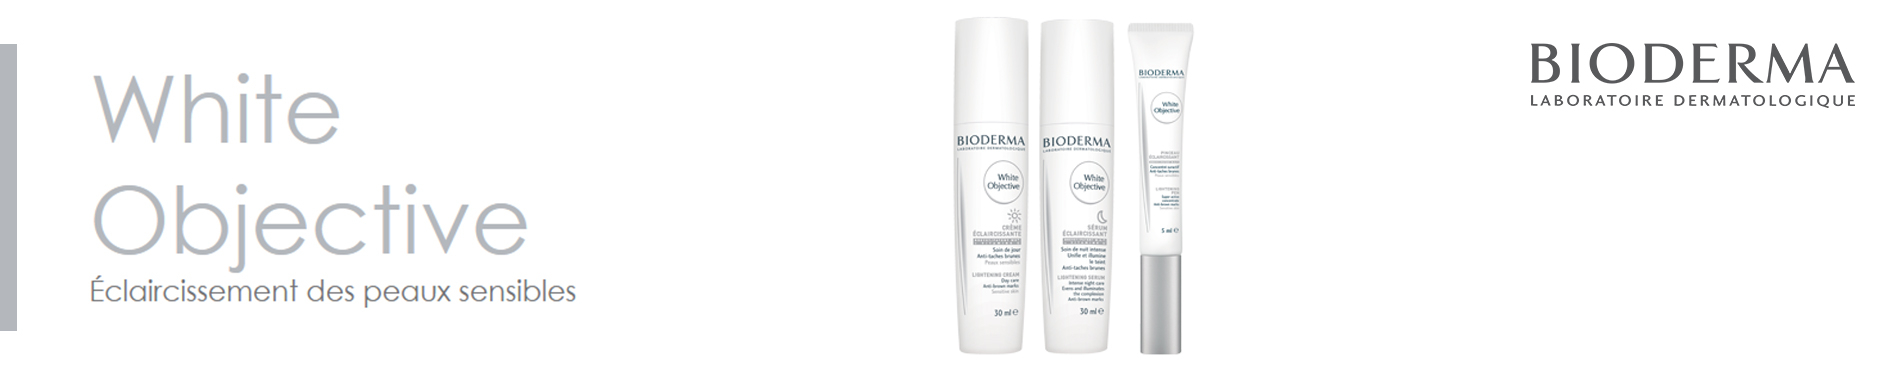 La gamme White Objective pour éclaircissement des peaux sensibles de Bioderma